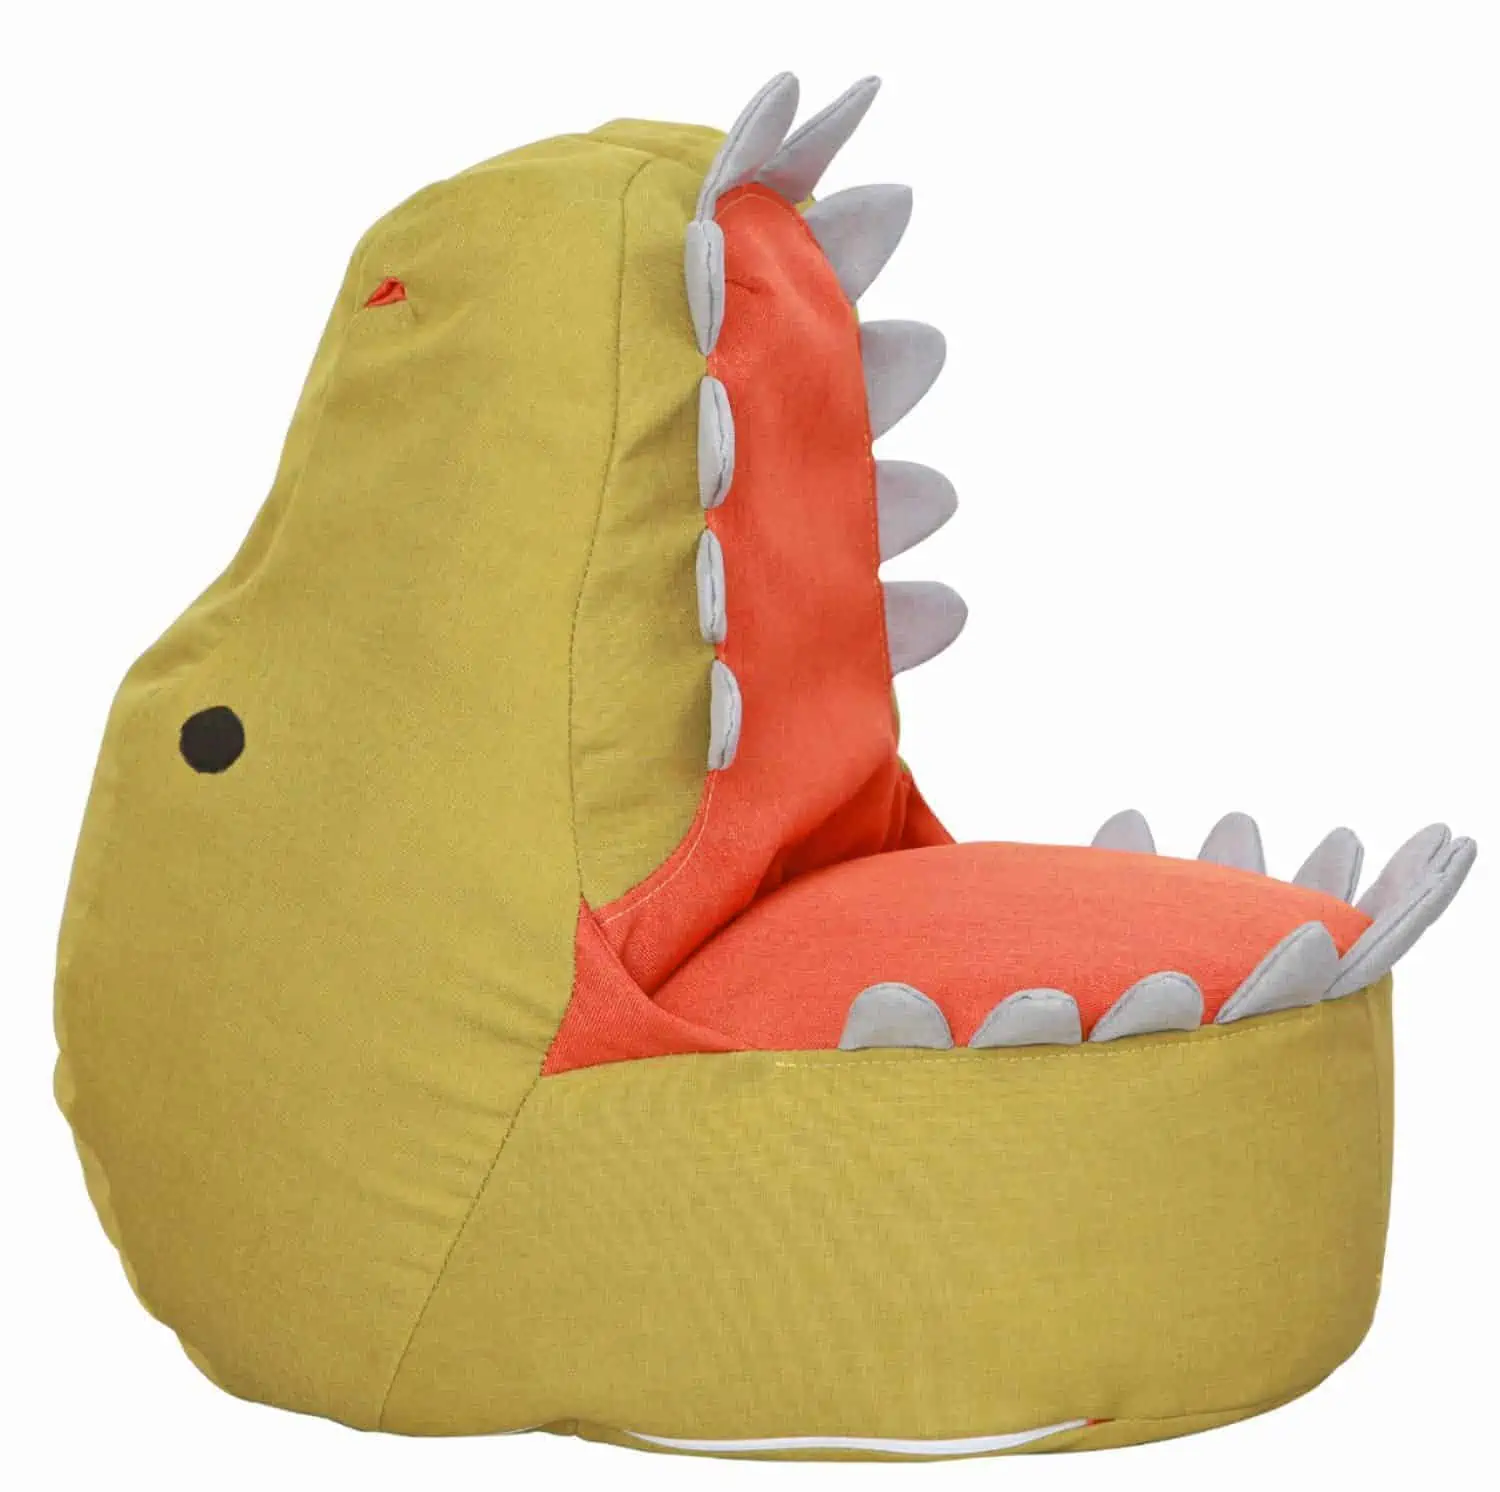 Dinosaur themed beanbag for kids